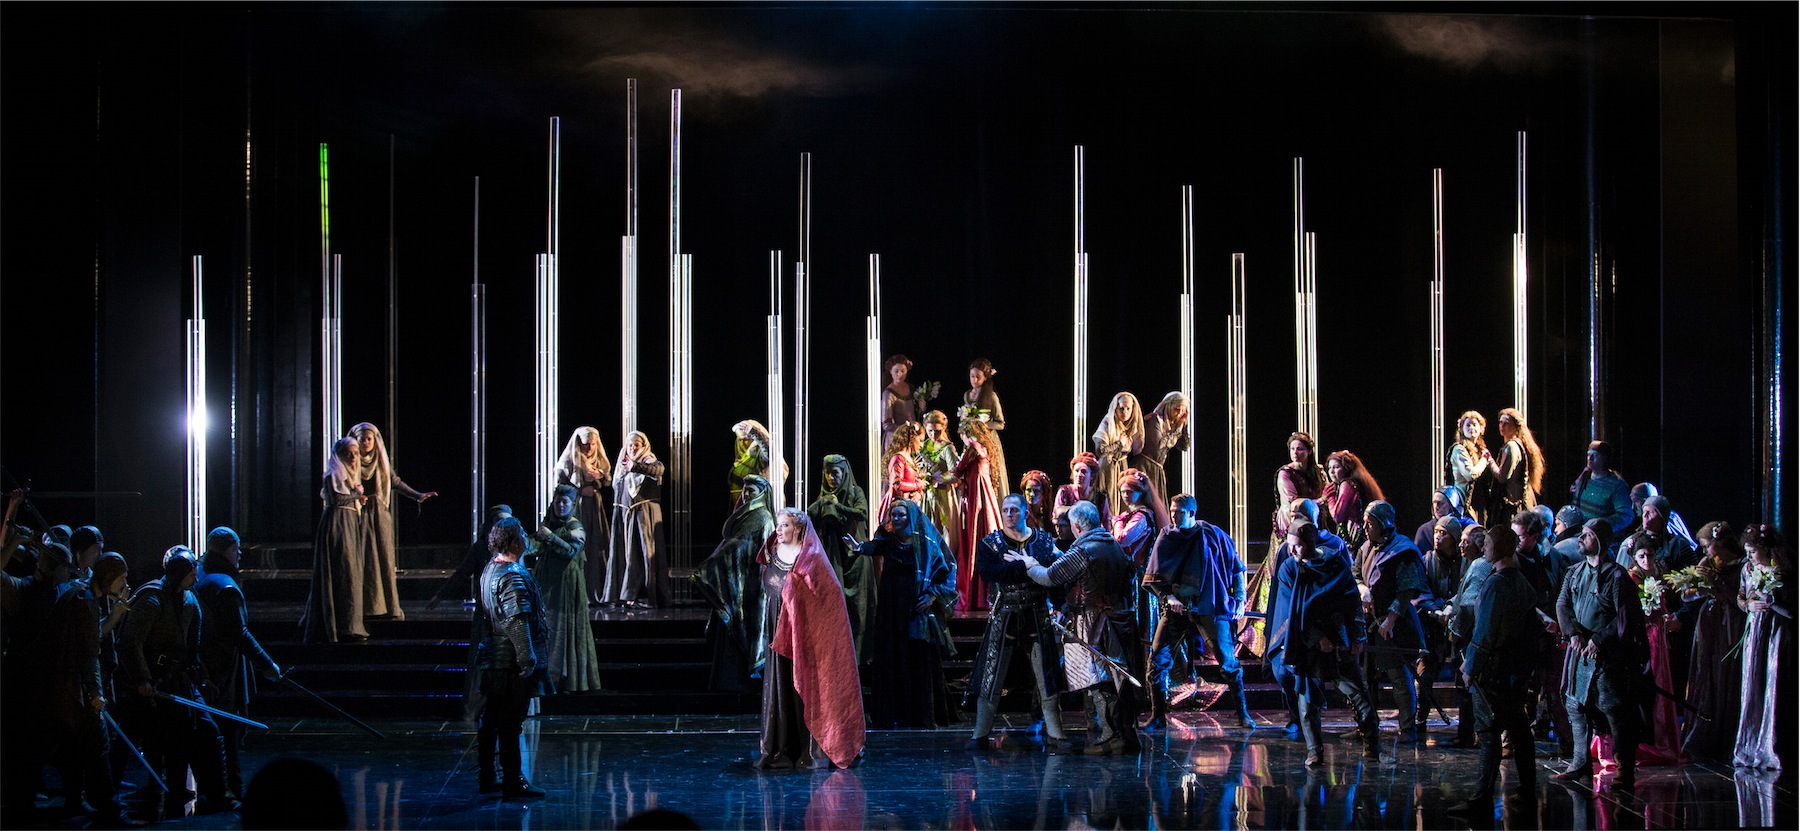 La Stagione Lirica di Padova 2017 ritorna in ottobre al Teatro Verdi di Padova con un Trovatore “pittorico” di Giuseppe Verdi in un nuovo allestimento dell’Opera di Maribor.